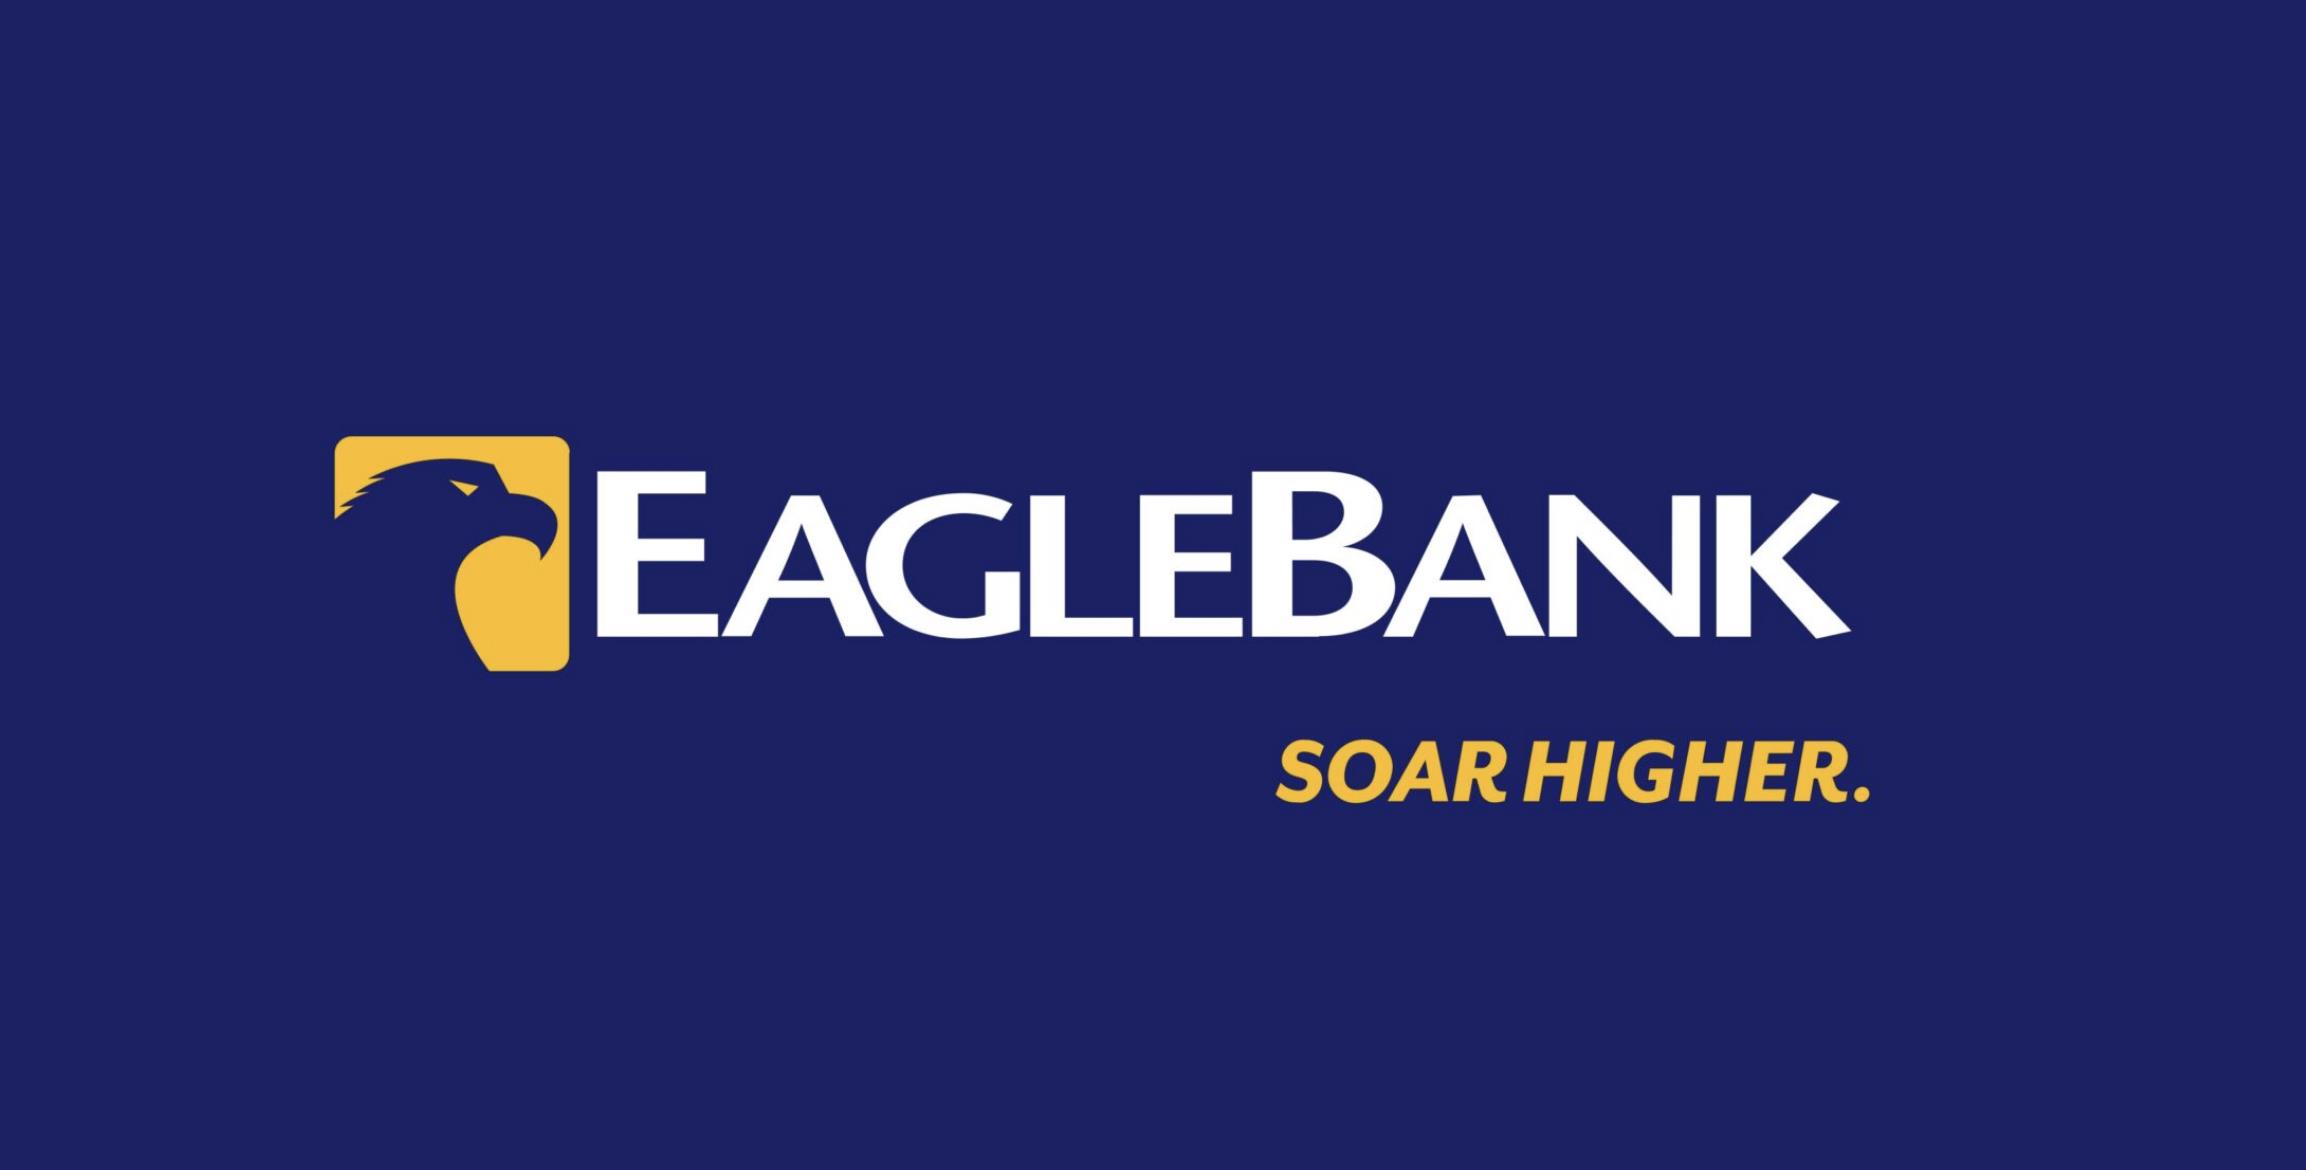 Eagle Bank Campaign